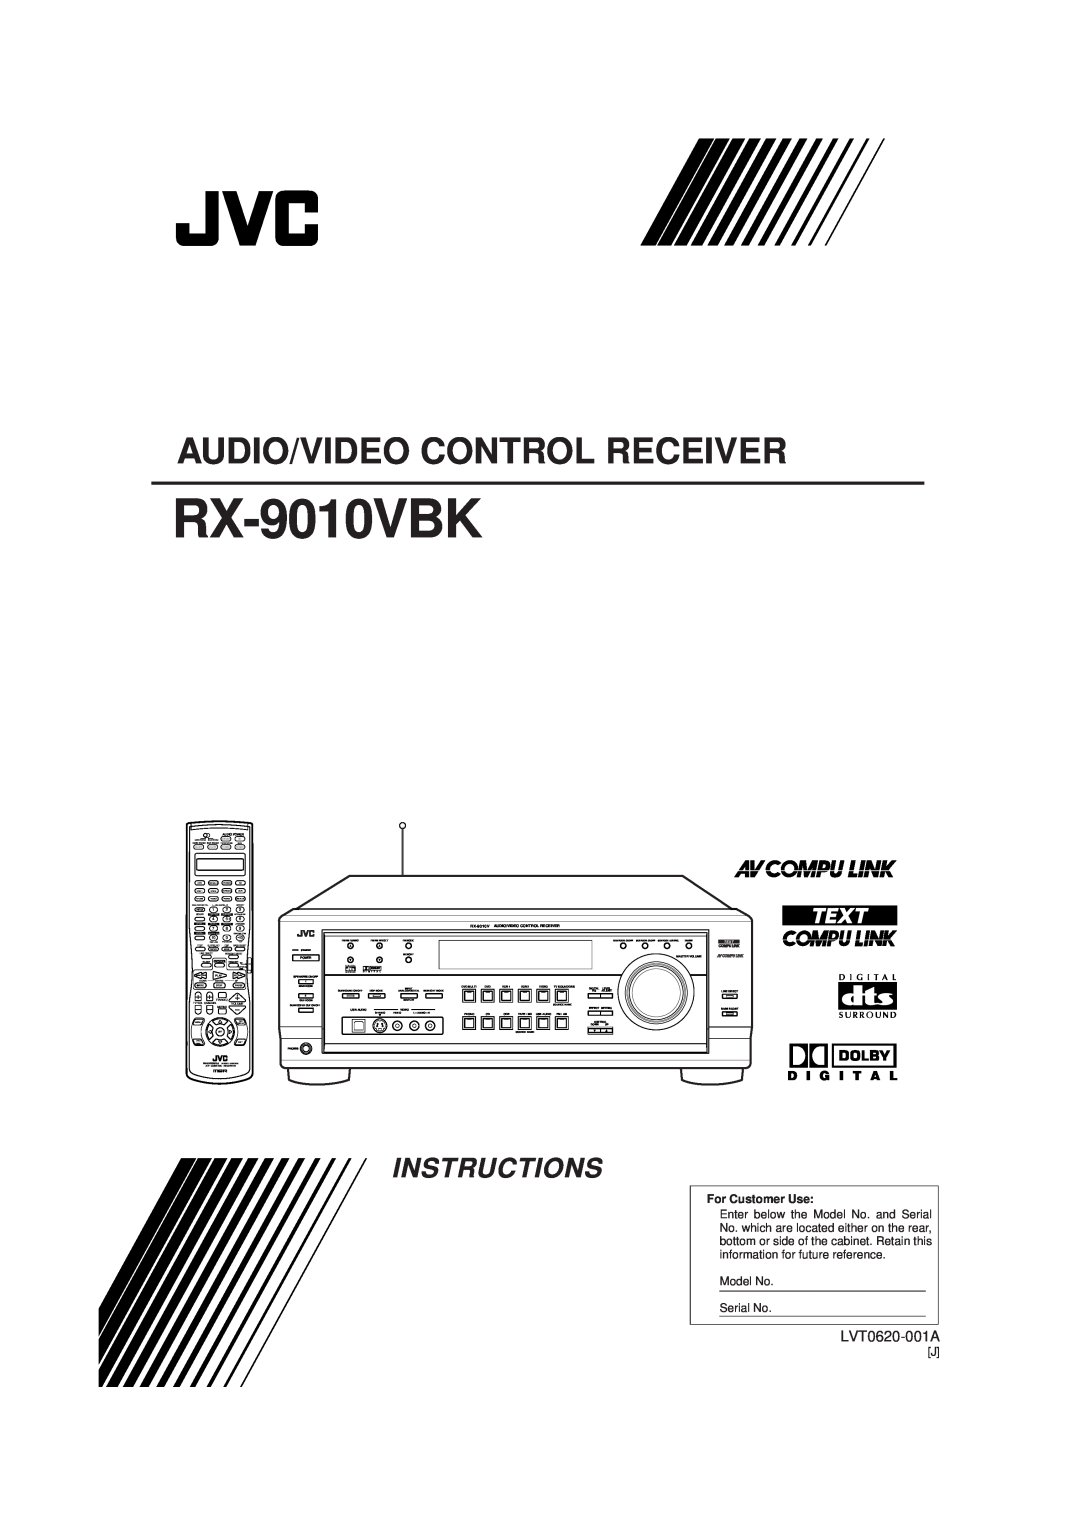 JVC RX-9010VBK manual Audio/Video Control Receiver, Instructions, LVT0620-001A, D I G I T A L, For Customer Use 